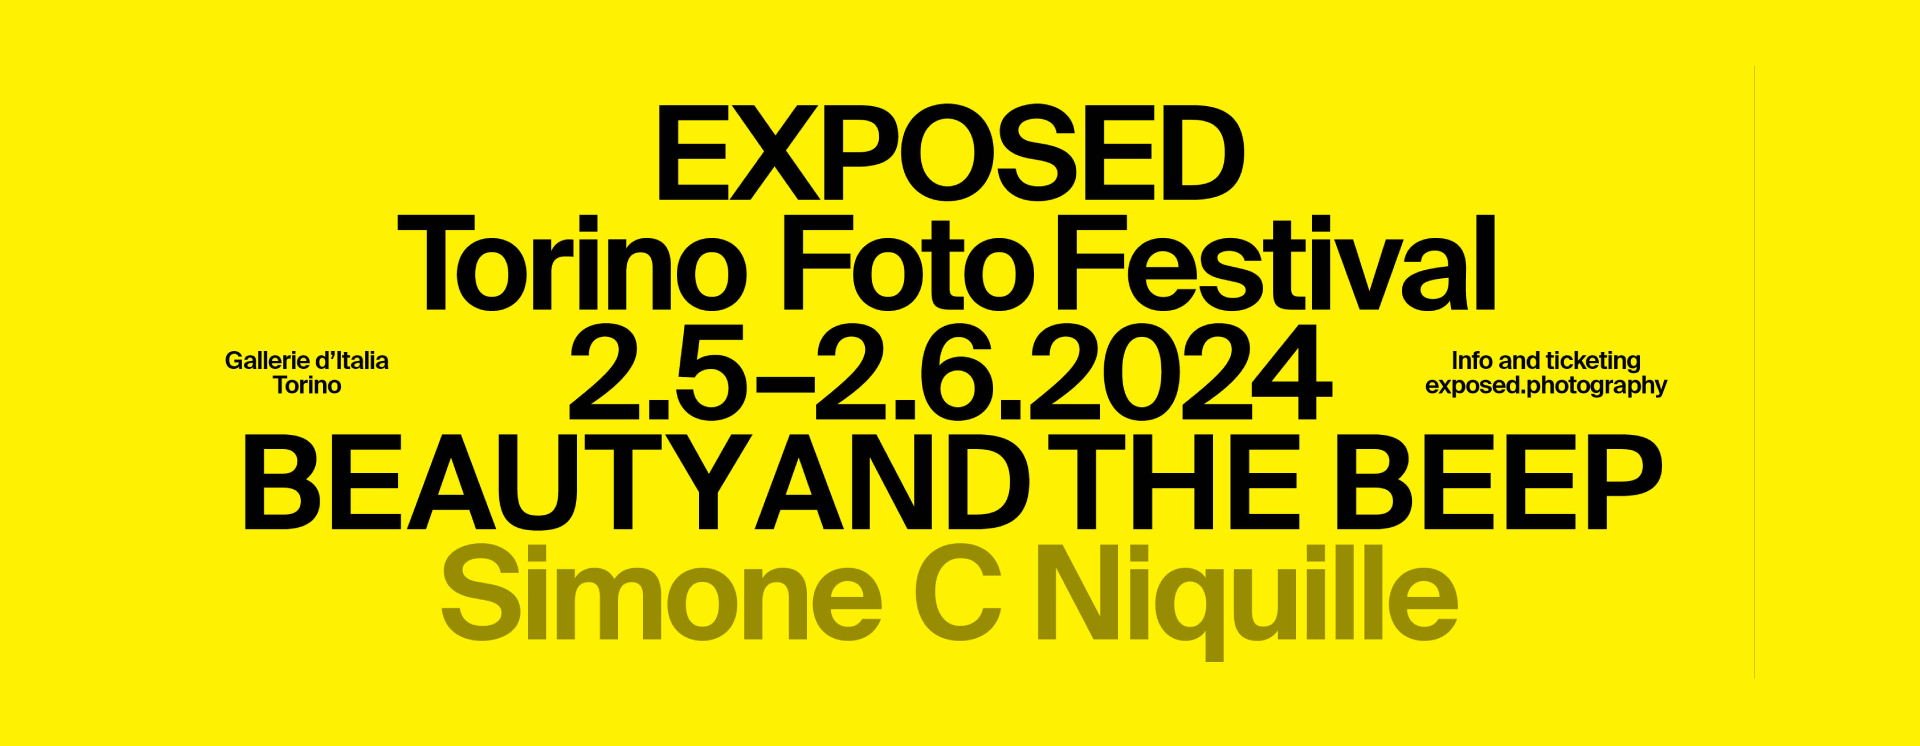 Exposed Tofino Film Festival